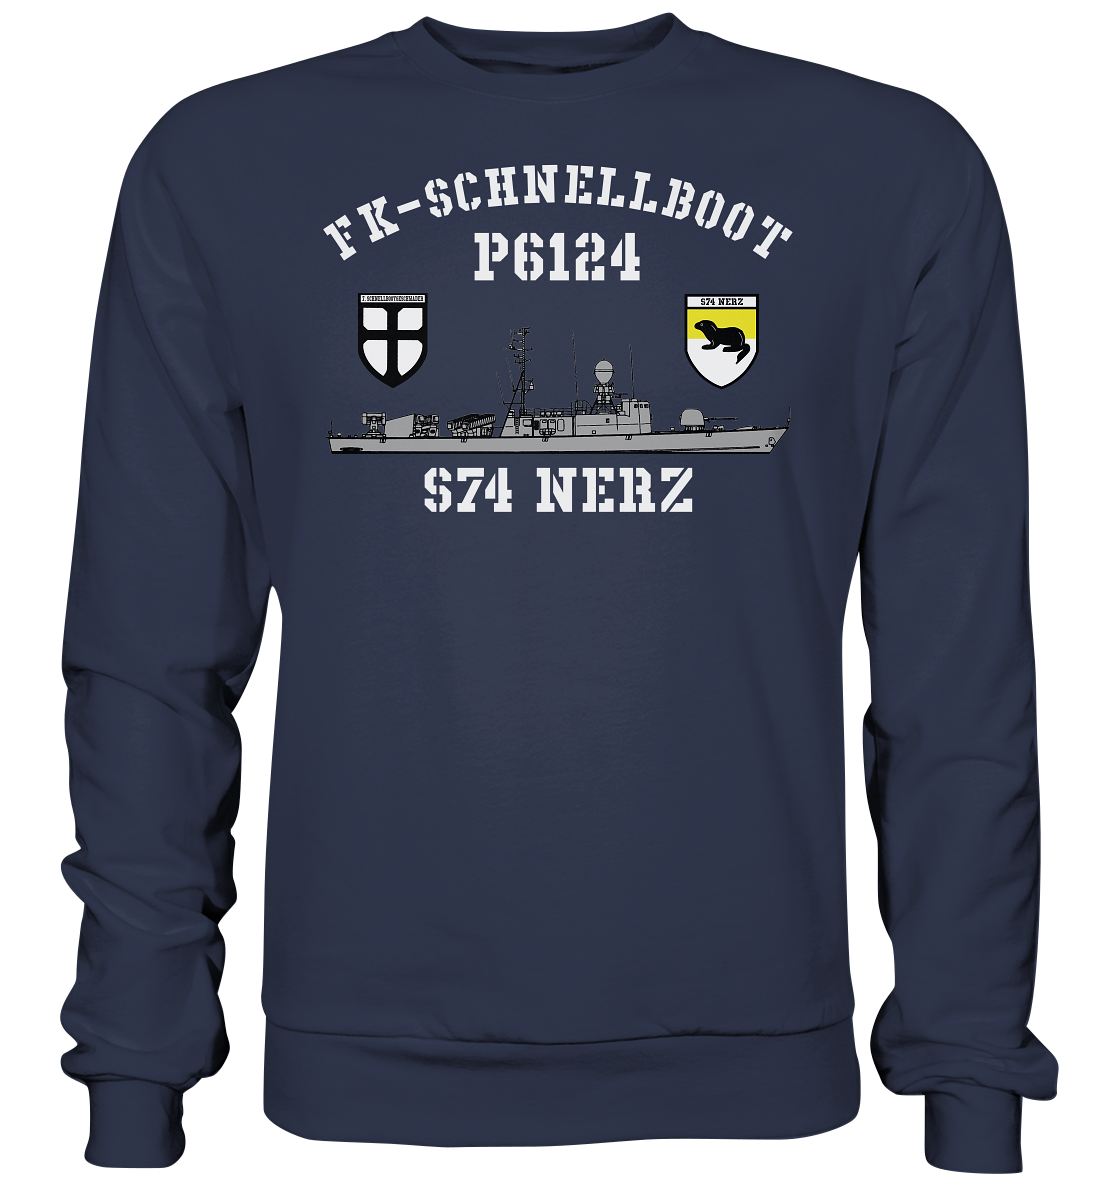 P6124 S74 NERZ 7.SG - Premium Sweatshirt